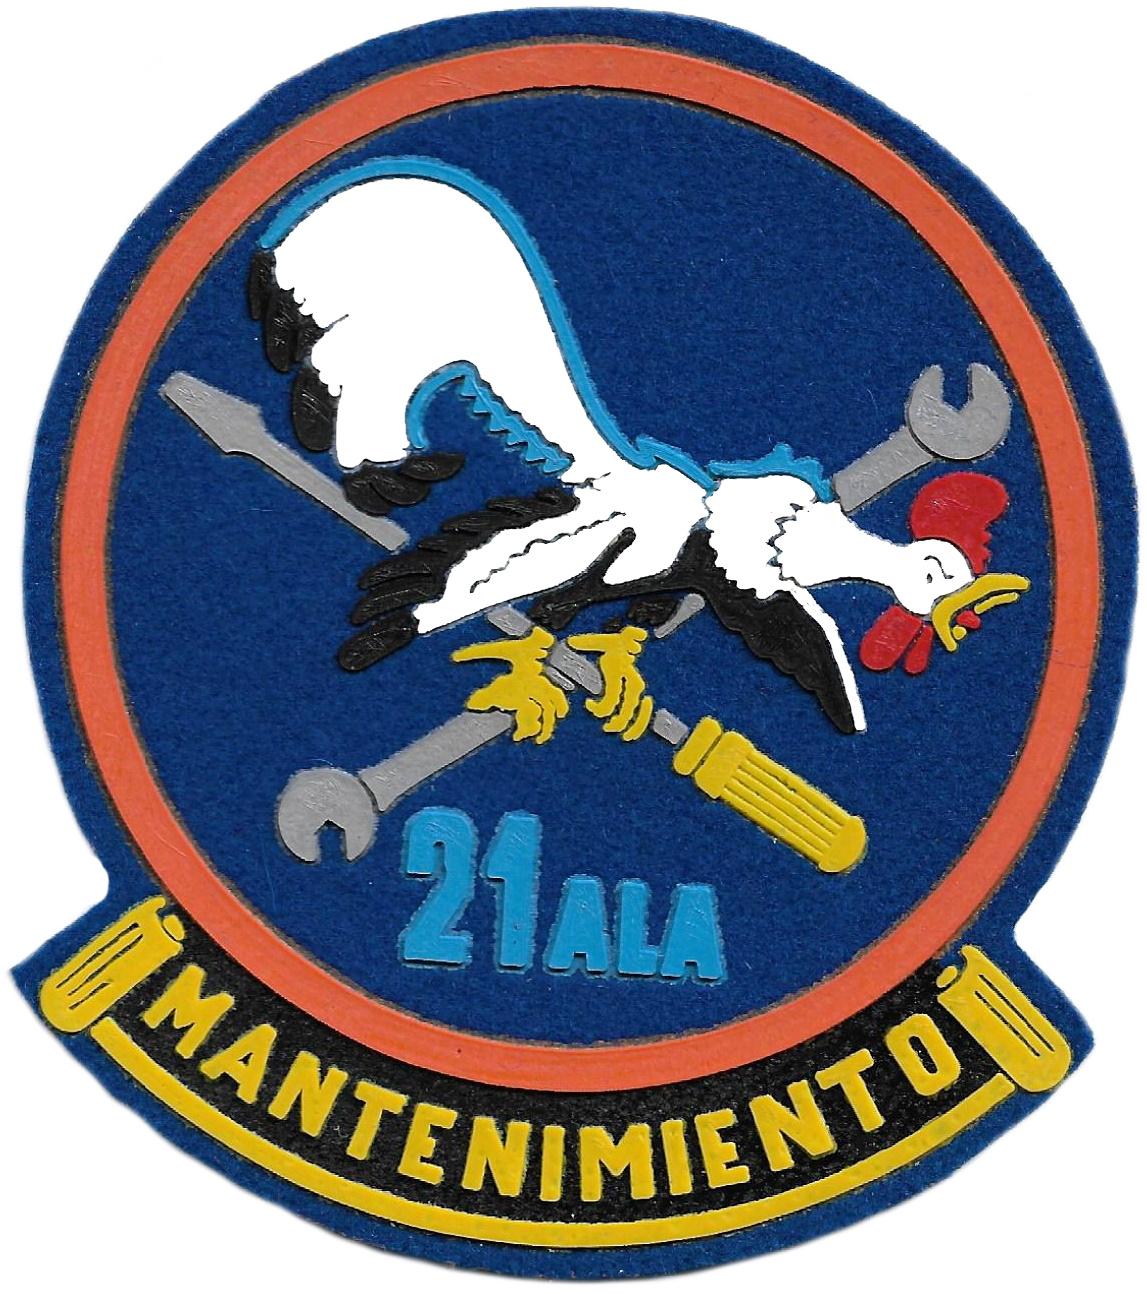 Ejército del aire ala 21 mantenimiento parche insignia emblema distintivo